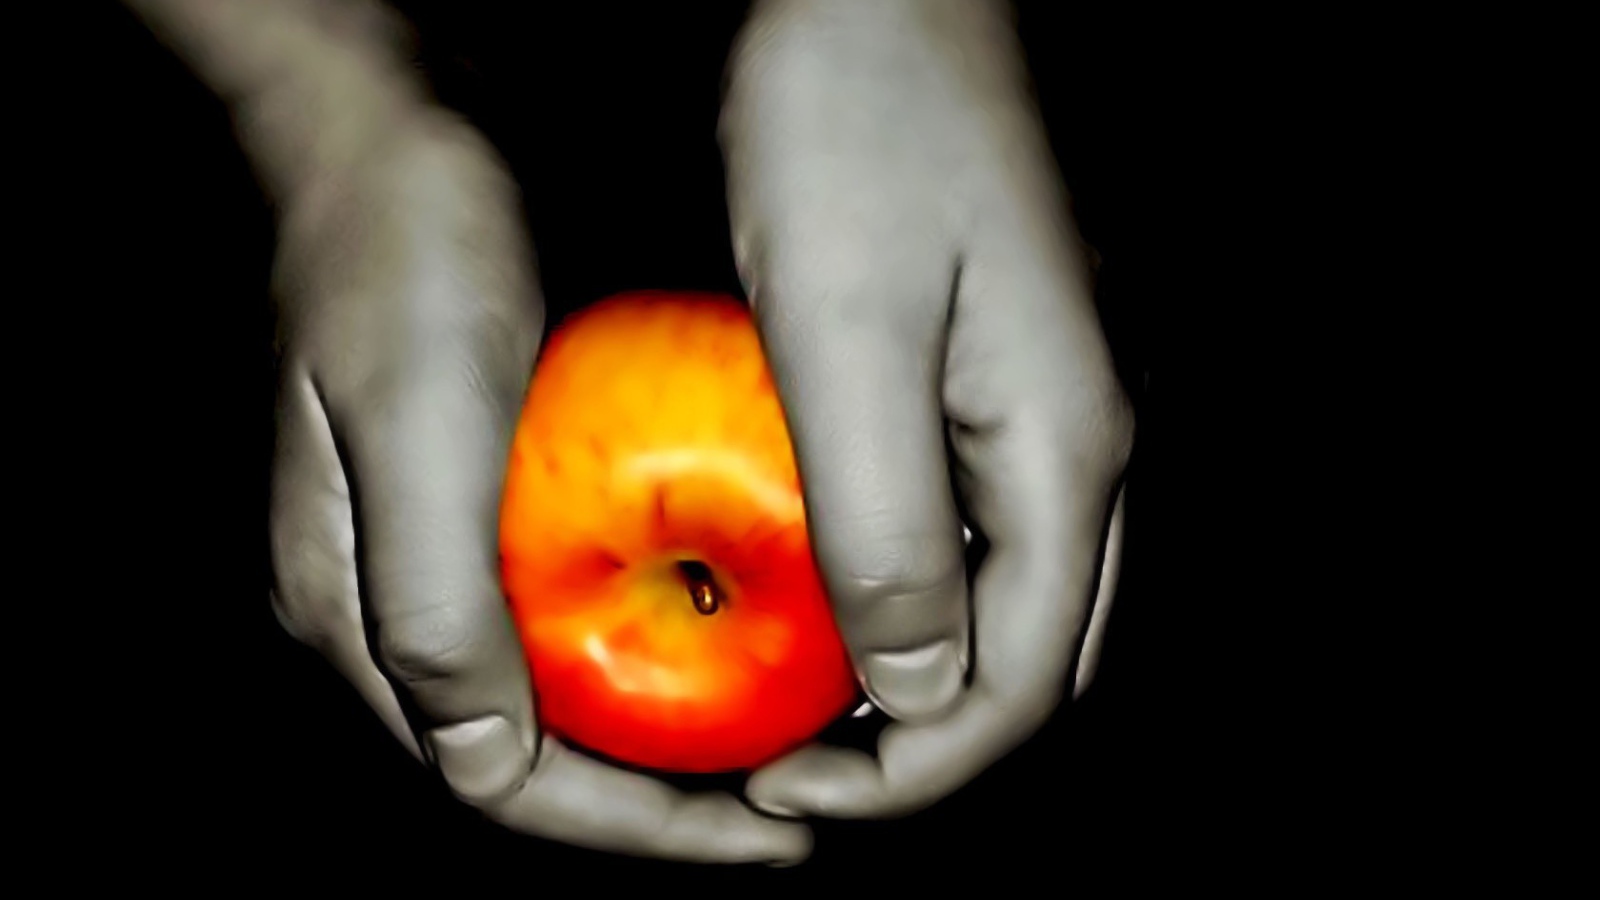 Цветное яблоко в руках